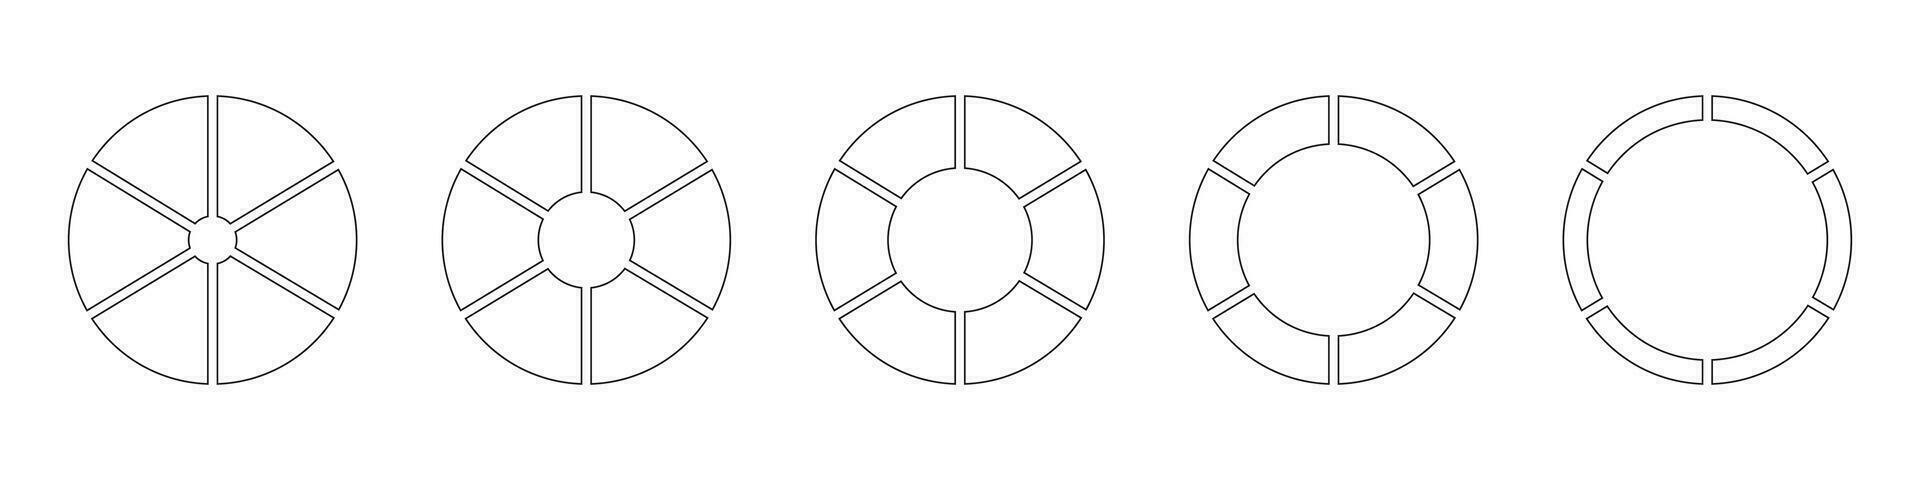 Gliederung Krapfen Diagramme oder Kuchen segmentiert auf 6 gleich Teile. Räder runden geteilt im sechs Abschnitte. Diagramme Infografik Satz. Kreis Sektion Graph Linie Kunst. Kuchen Diagramm einfach Symbol. geometrisch Vektor Element.